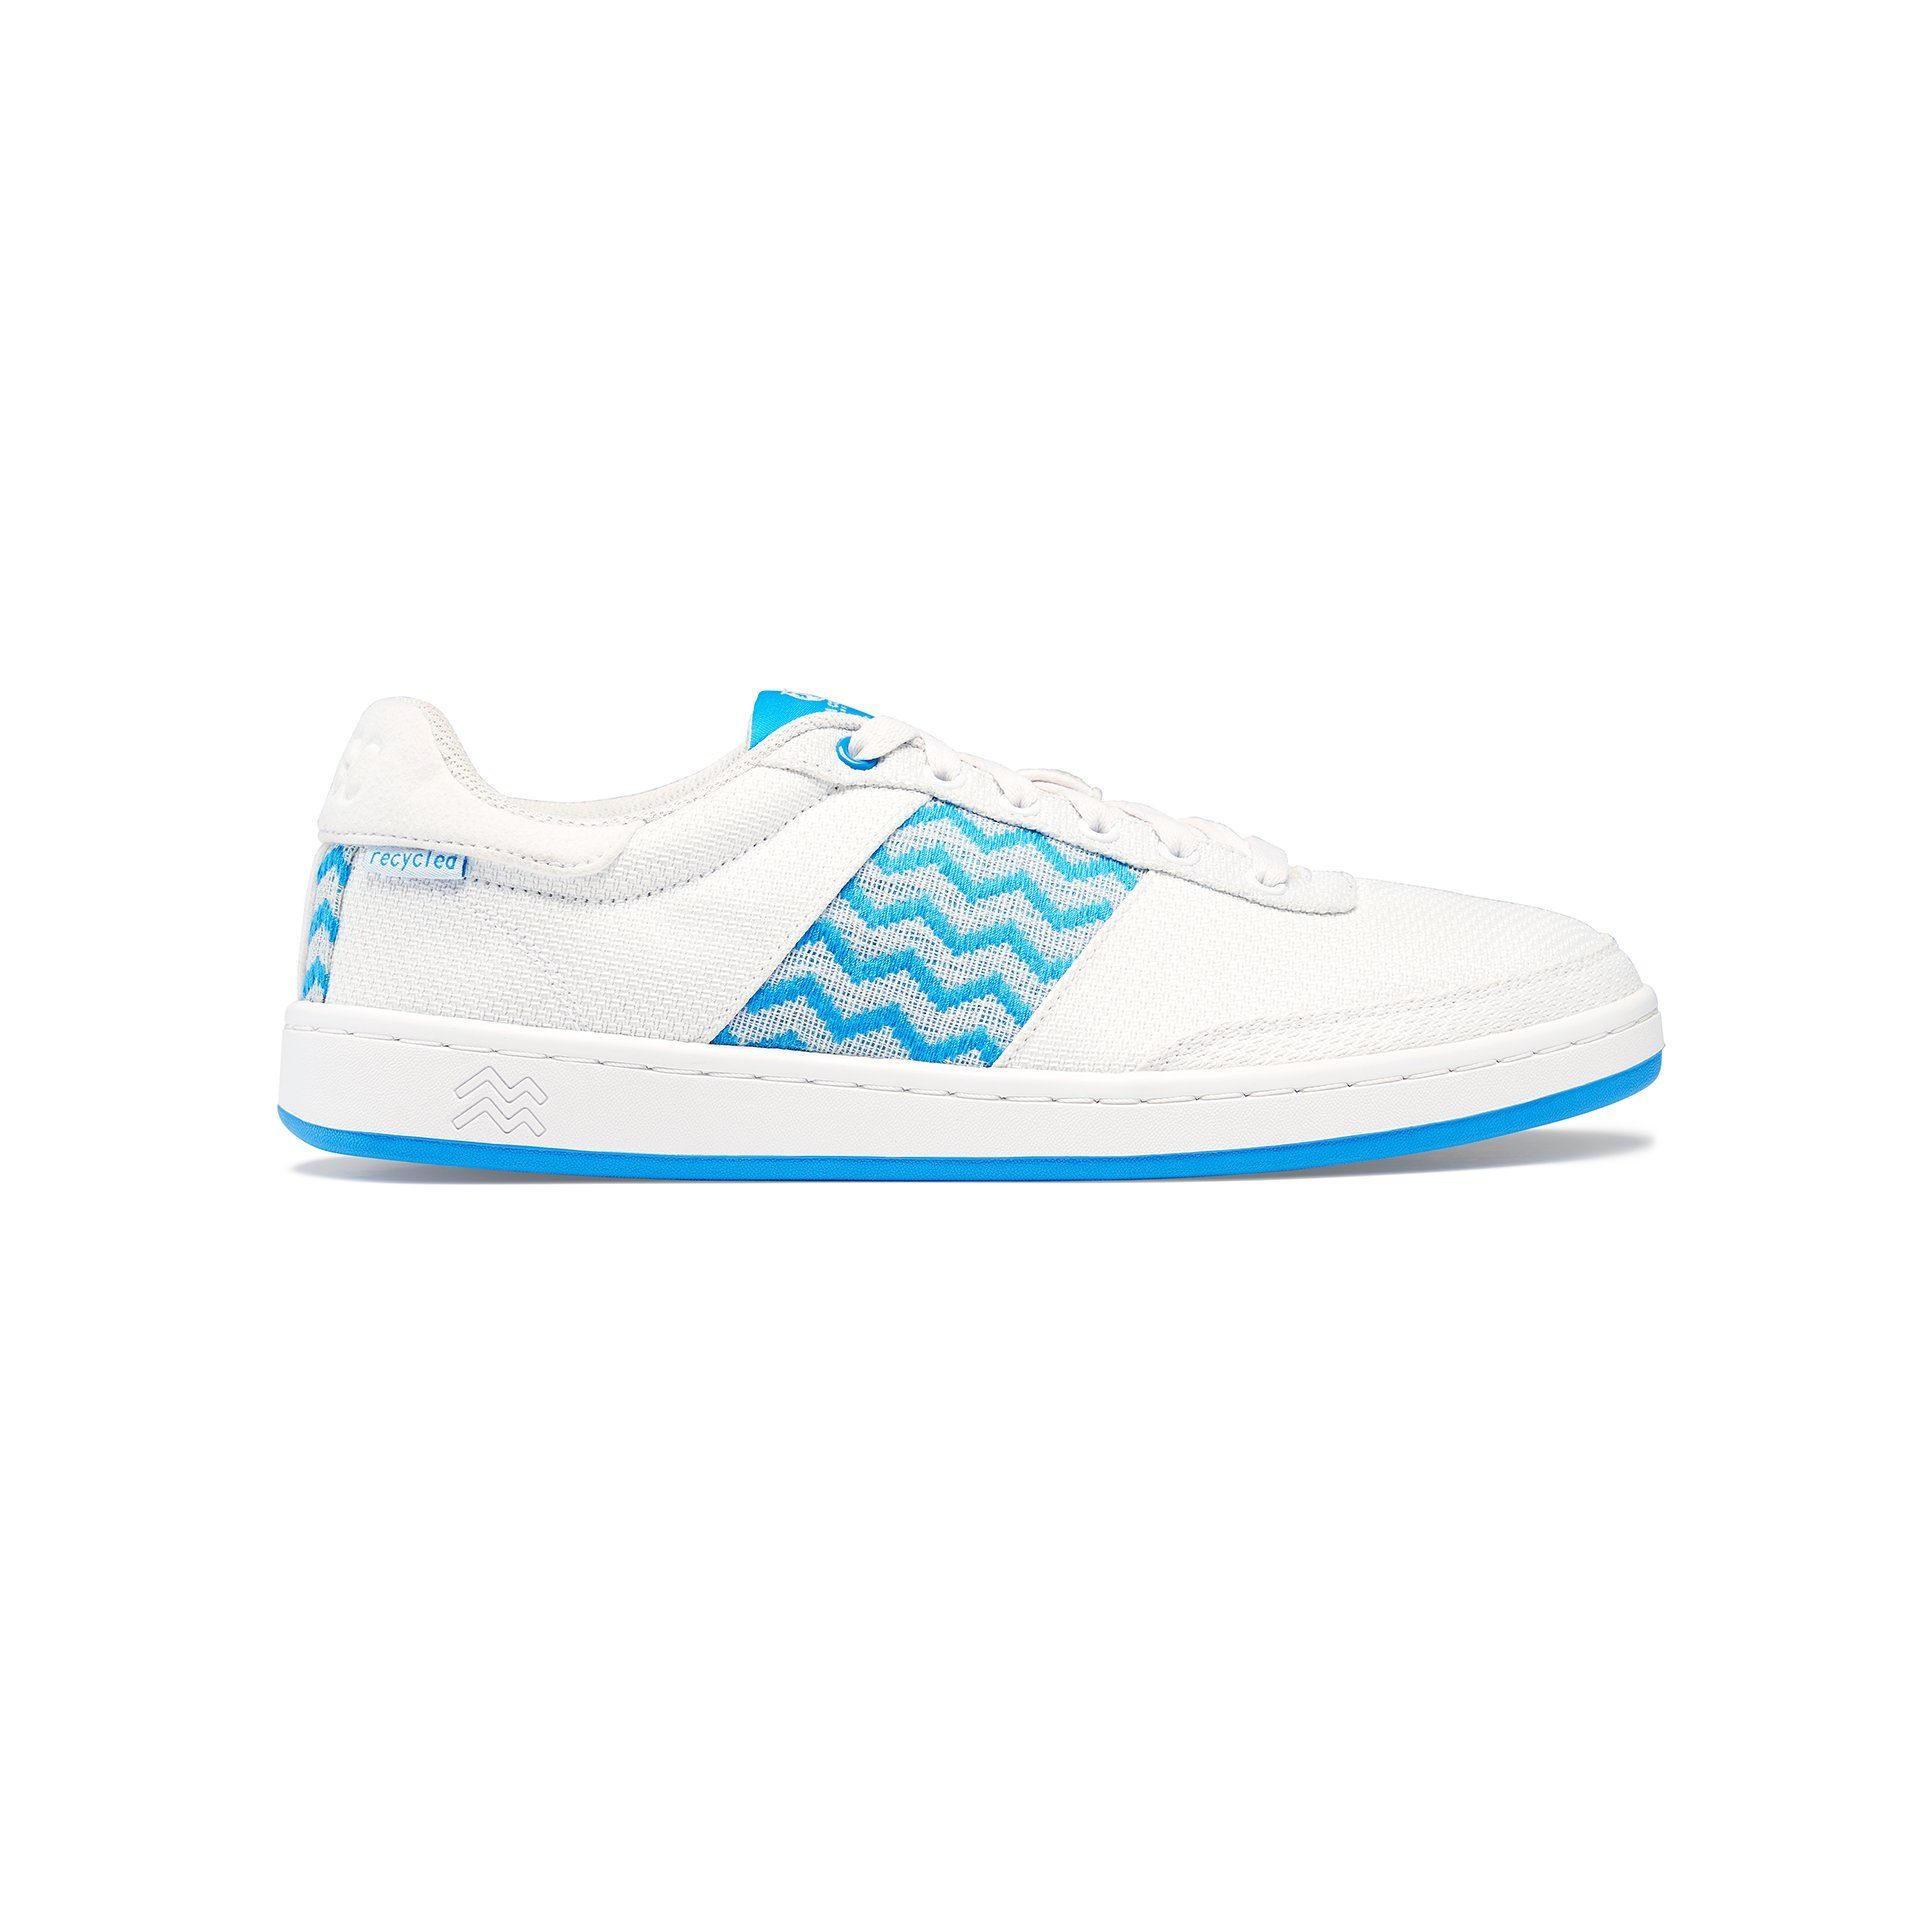 N'go Shoes Viva con Agua Bright Mesh Sneaker Blue 2.0 Eco